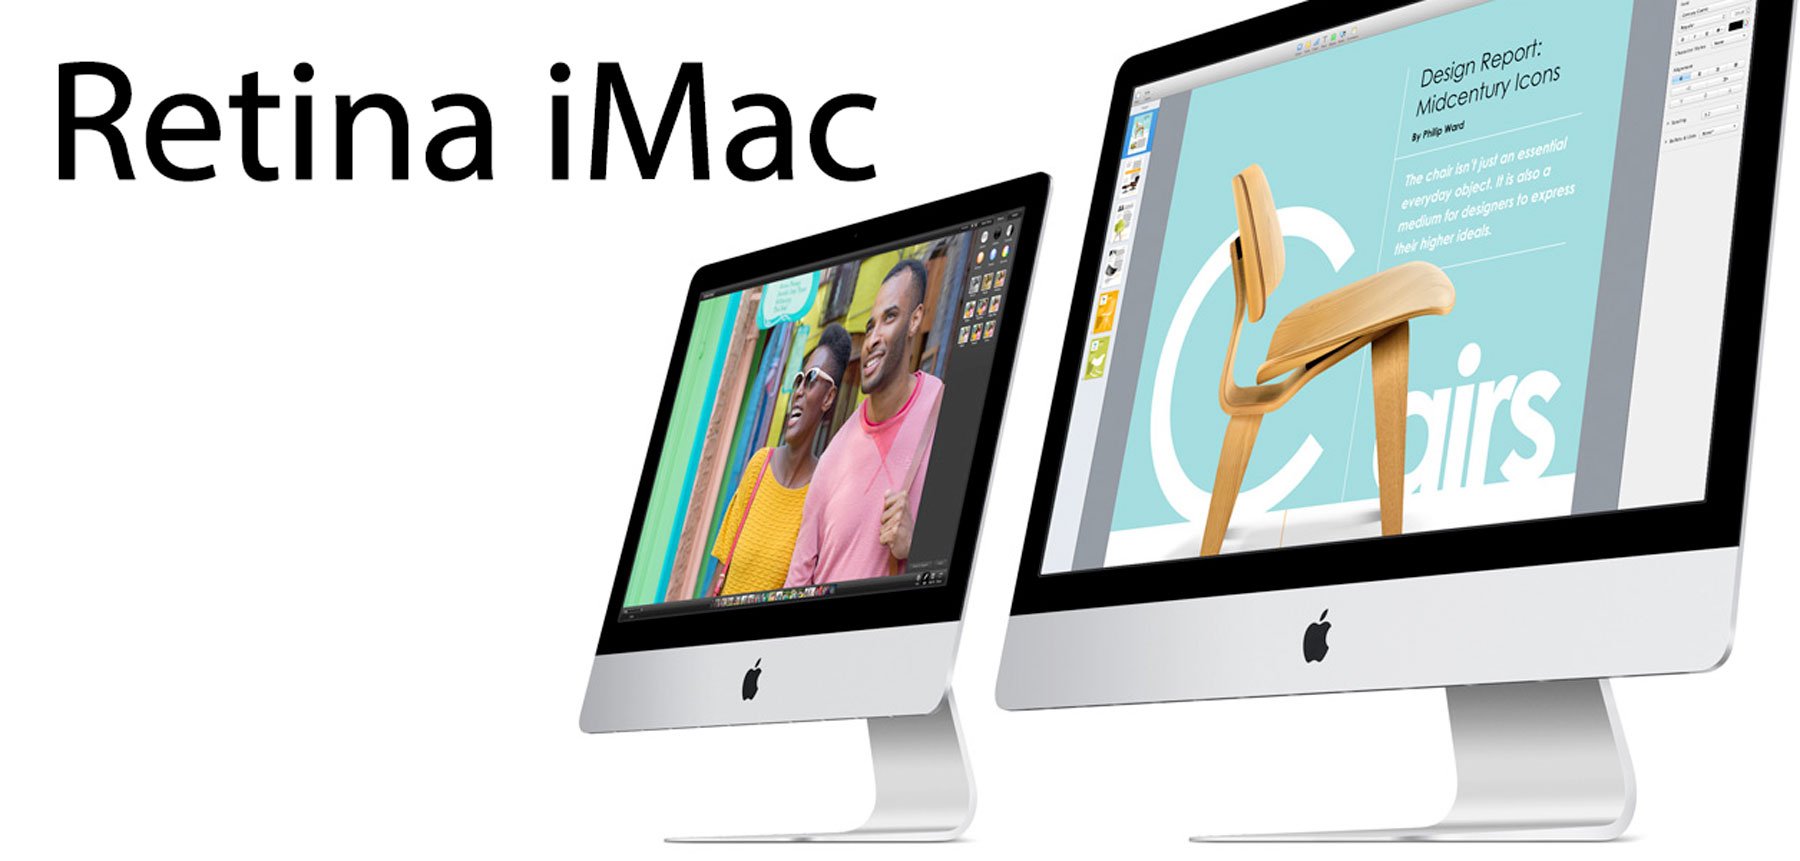 Retina iMac kommt, Retina MacBook Air später 8